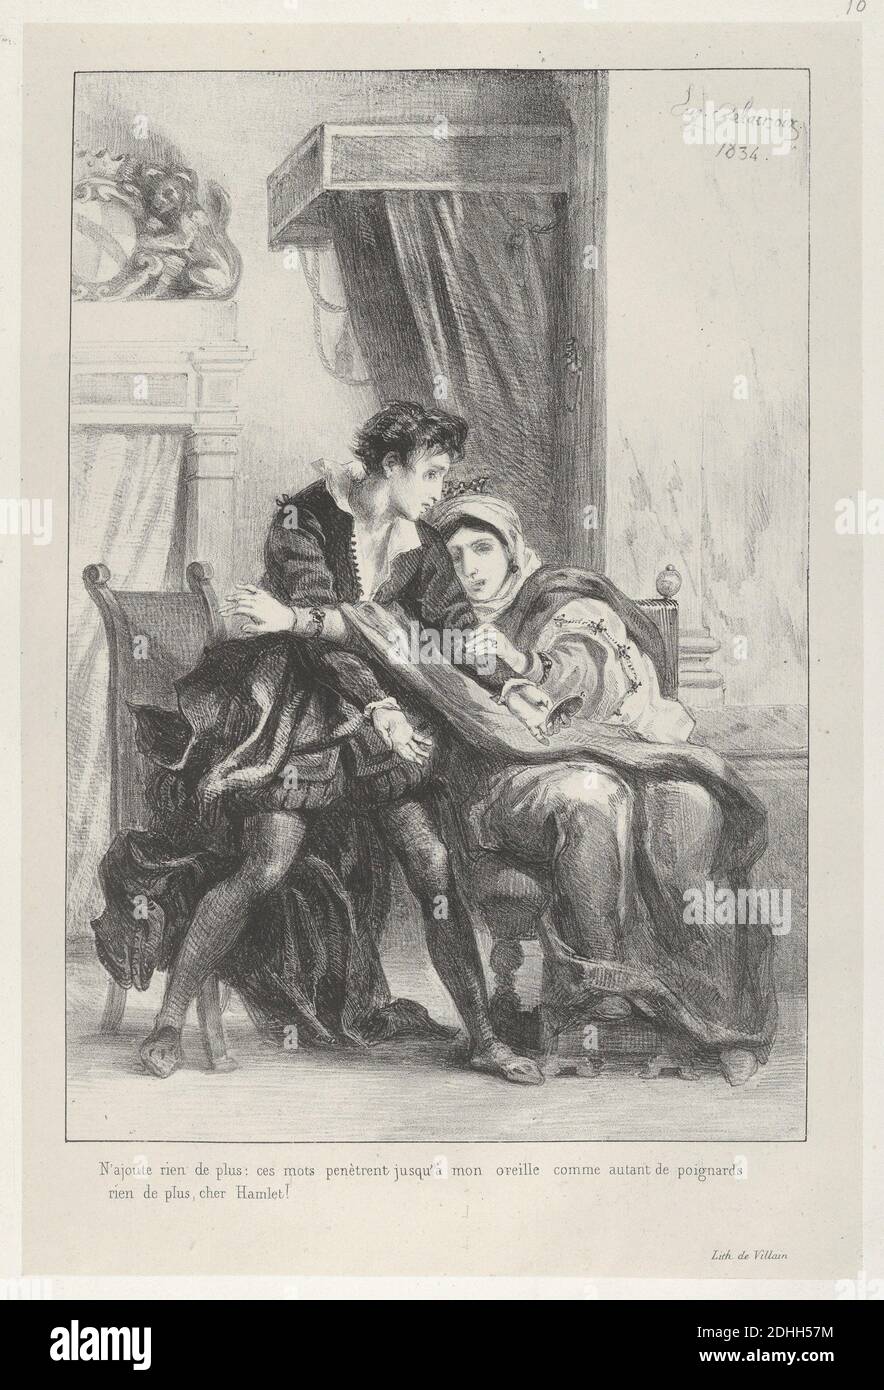 Eugène Delacroix (Francés, Charenton-Saint-Maurice 1798-París 1863) Hamlet y la Reina (Hamlet, Acto 3, escena 4), de 1834, Litografía francesa; tercer estado de cuatro; Imagen: 10 1/8 x 7 in. (25,7 x 17,8 cm) Hoja: 11 7/8 x 7 15/16. (30,1 x 20,2 cm), el Metropolitan Museum of Art, Nueva York, Fondo de Rogers, 1922 (22,56.13) http://www.metmuseum.org/Collections/search-the-collections/337108 Foto de stock